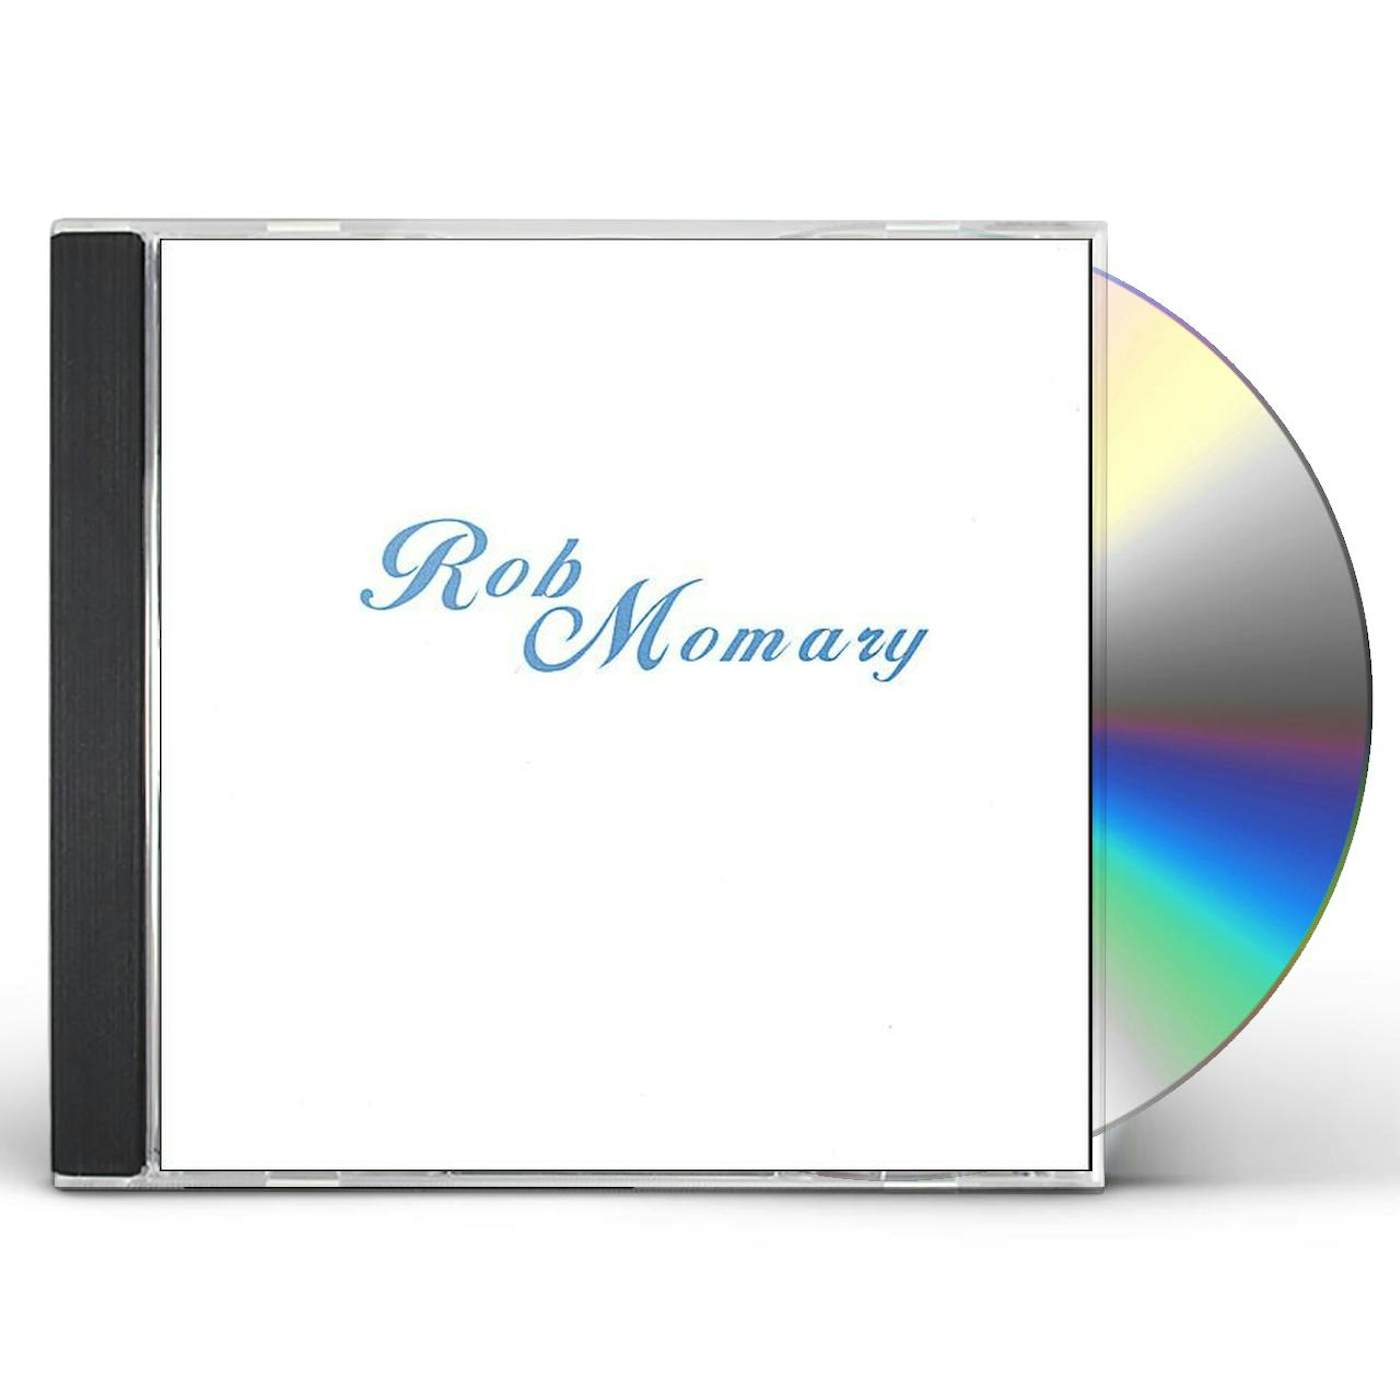 ROB MOMARY CD